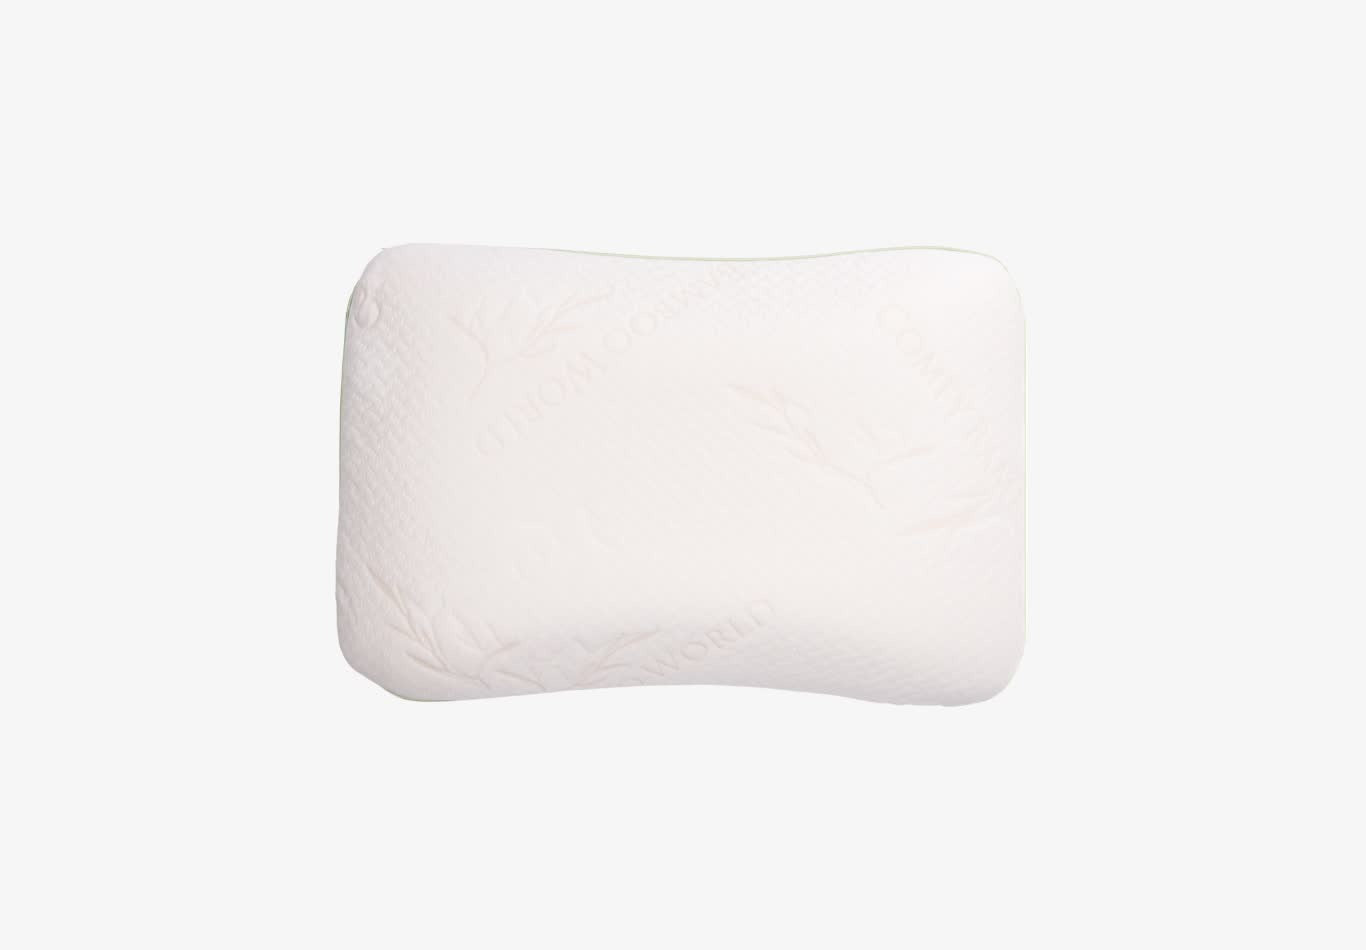 Lux Cooling Gel Memory Foam Pillow